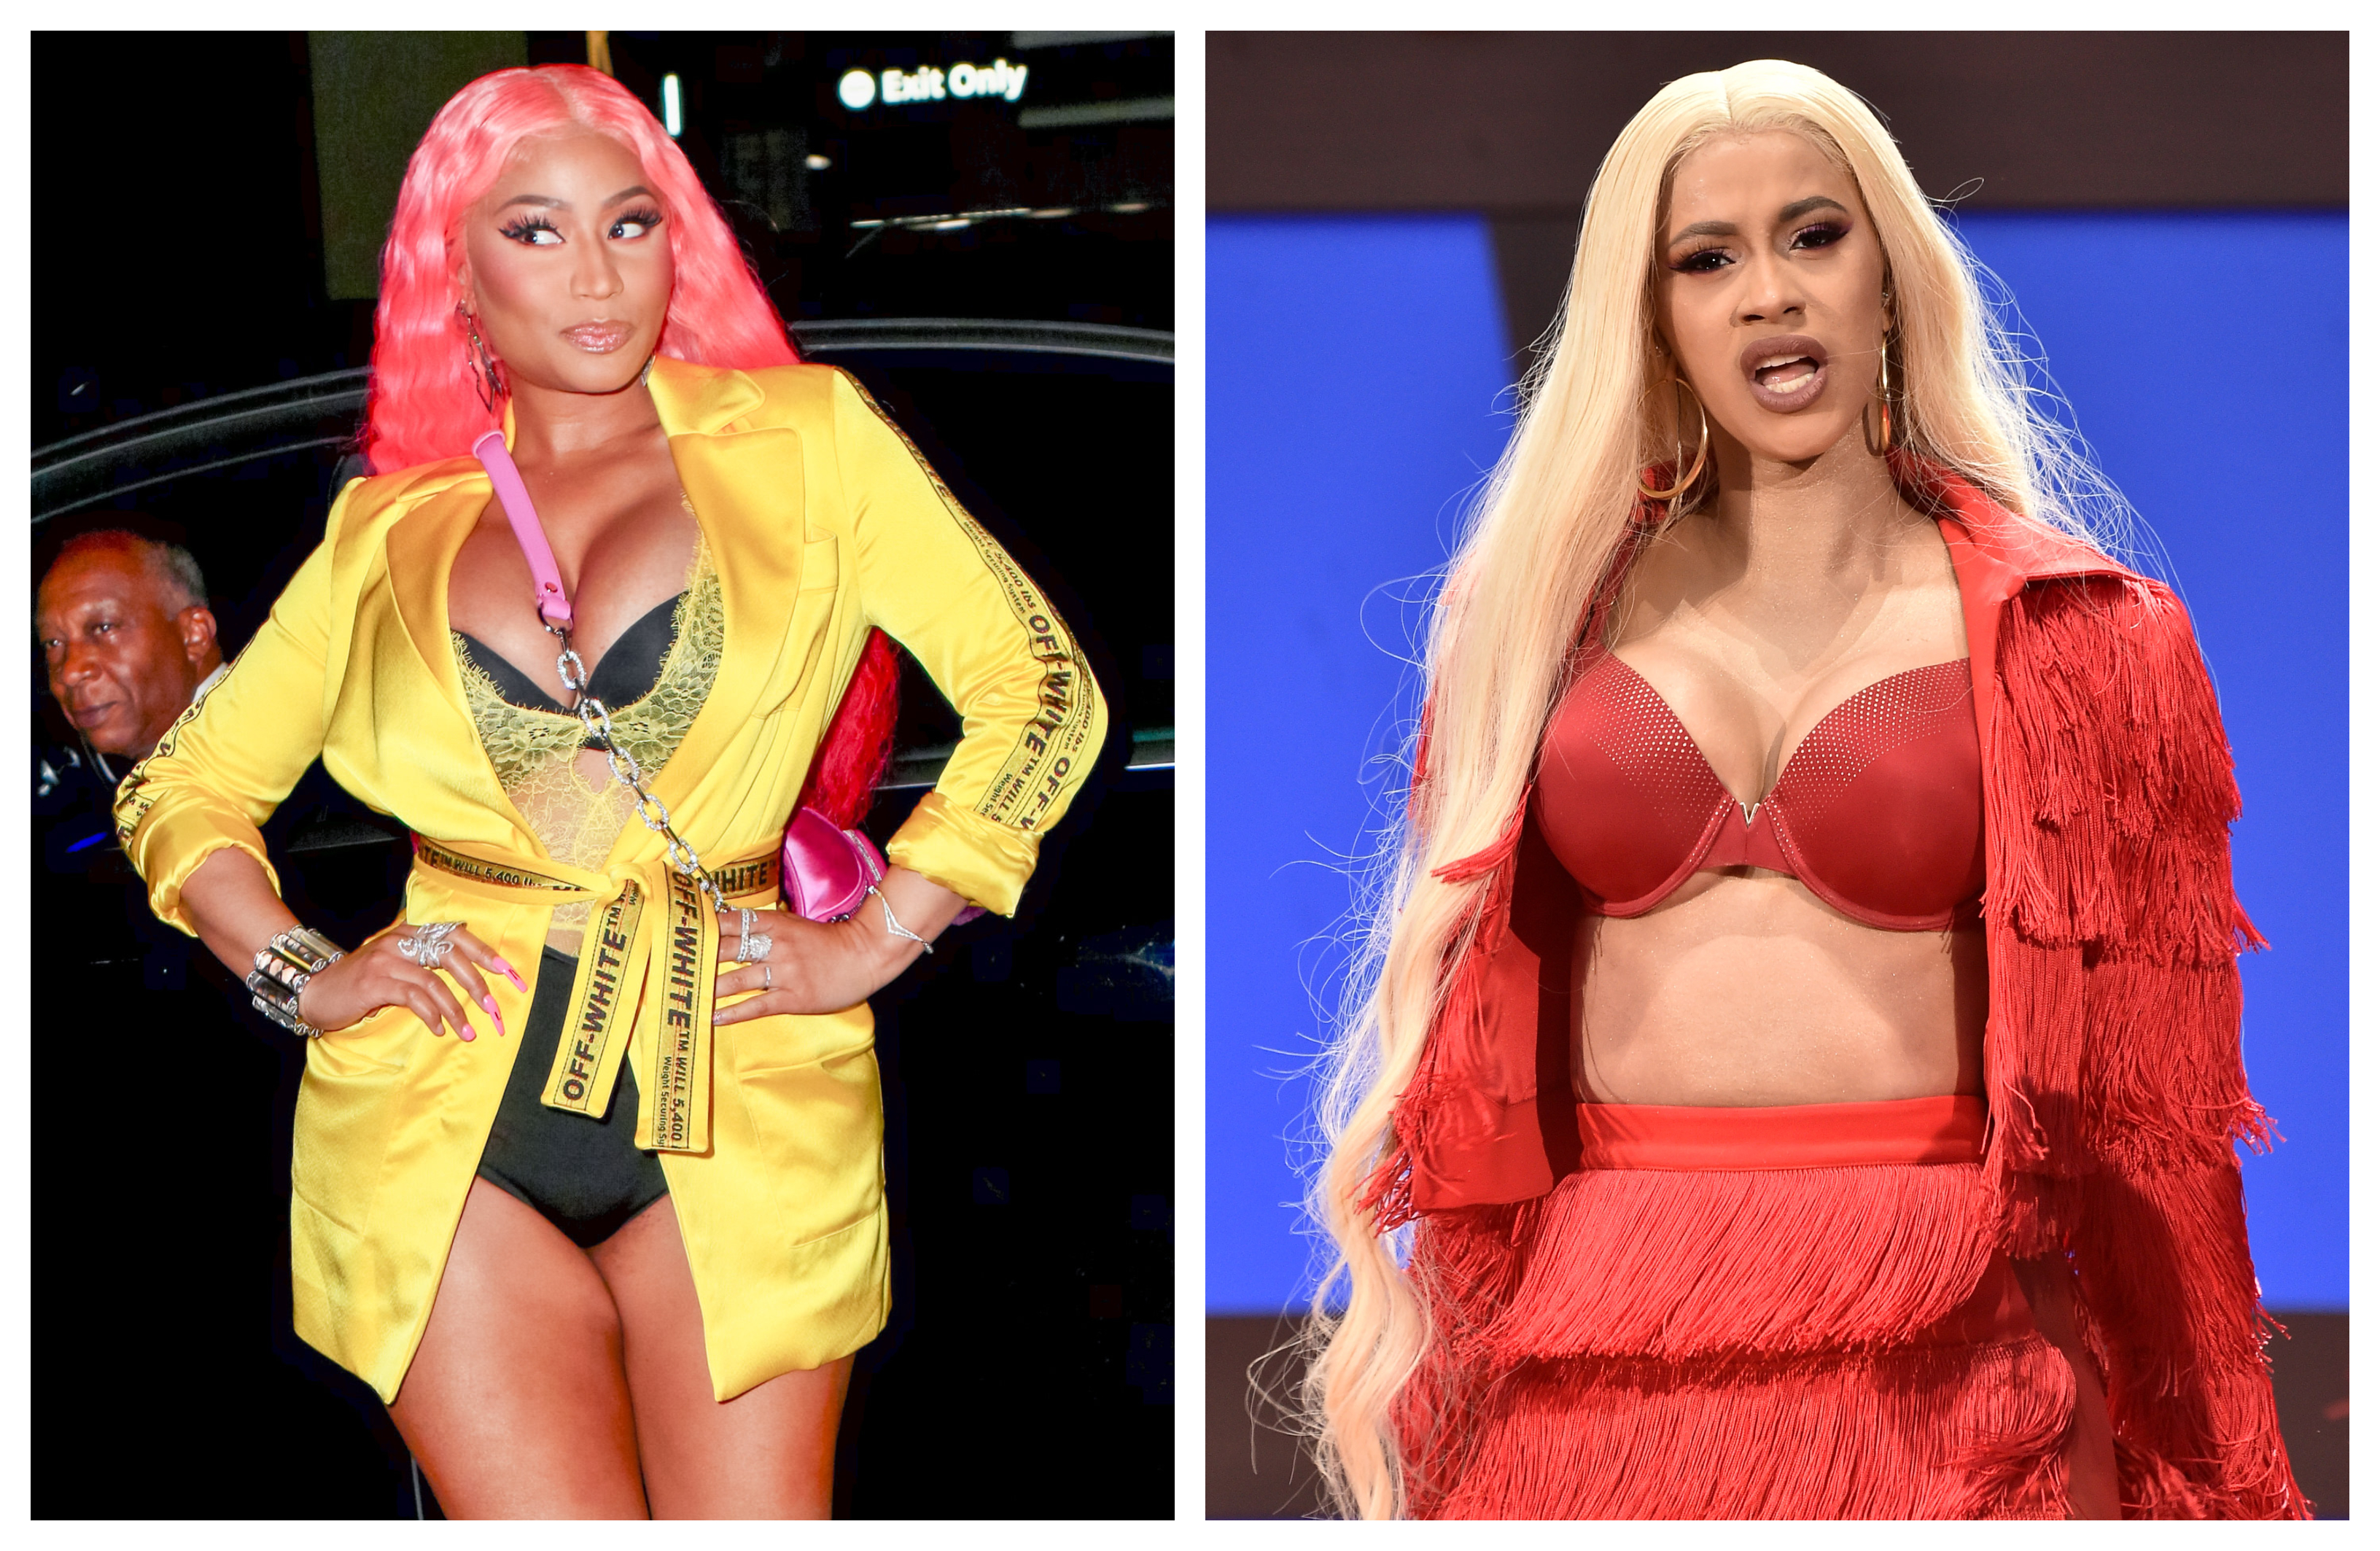 Nicki Minaj Mocks Cardi B With New “Nicki Stopped My Bag” Merch